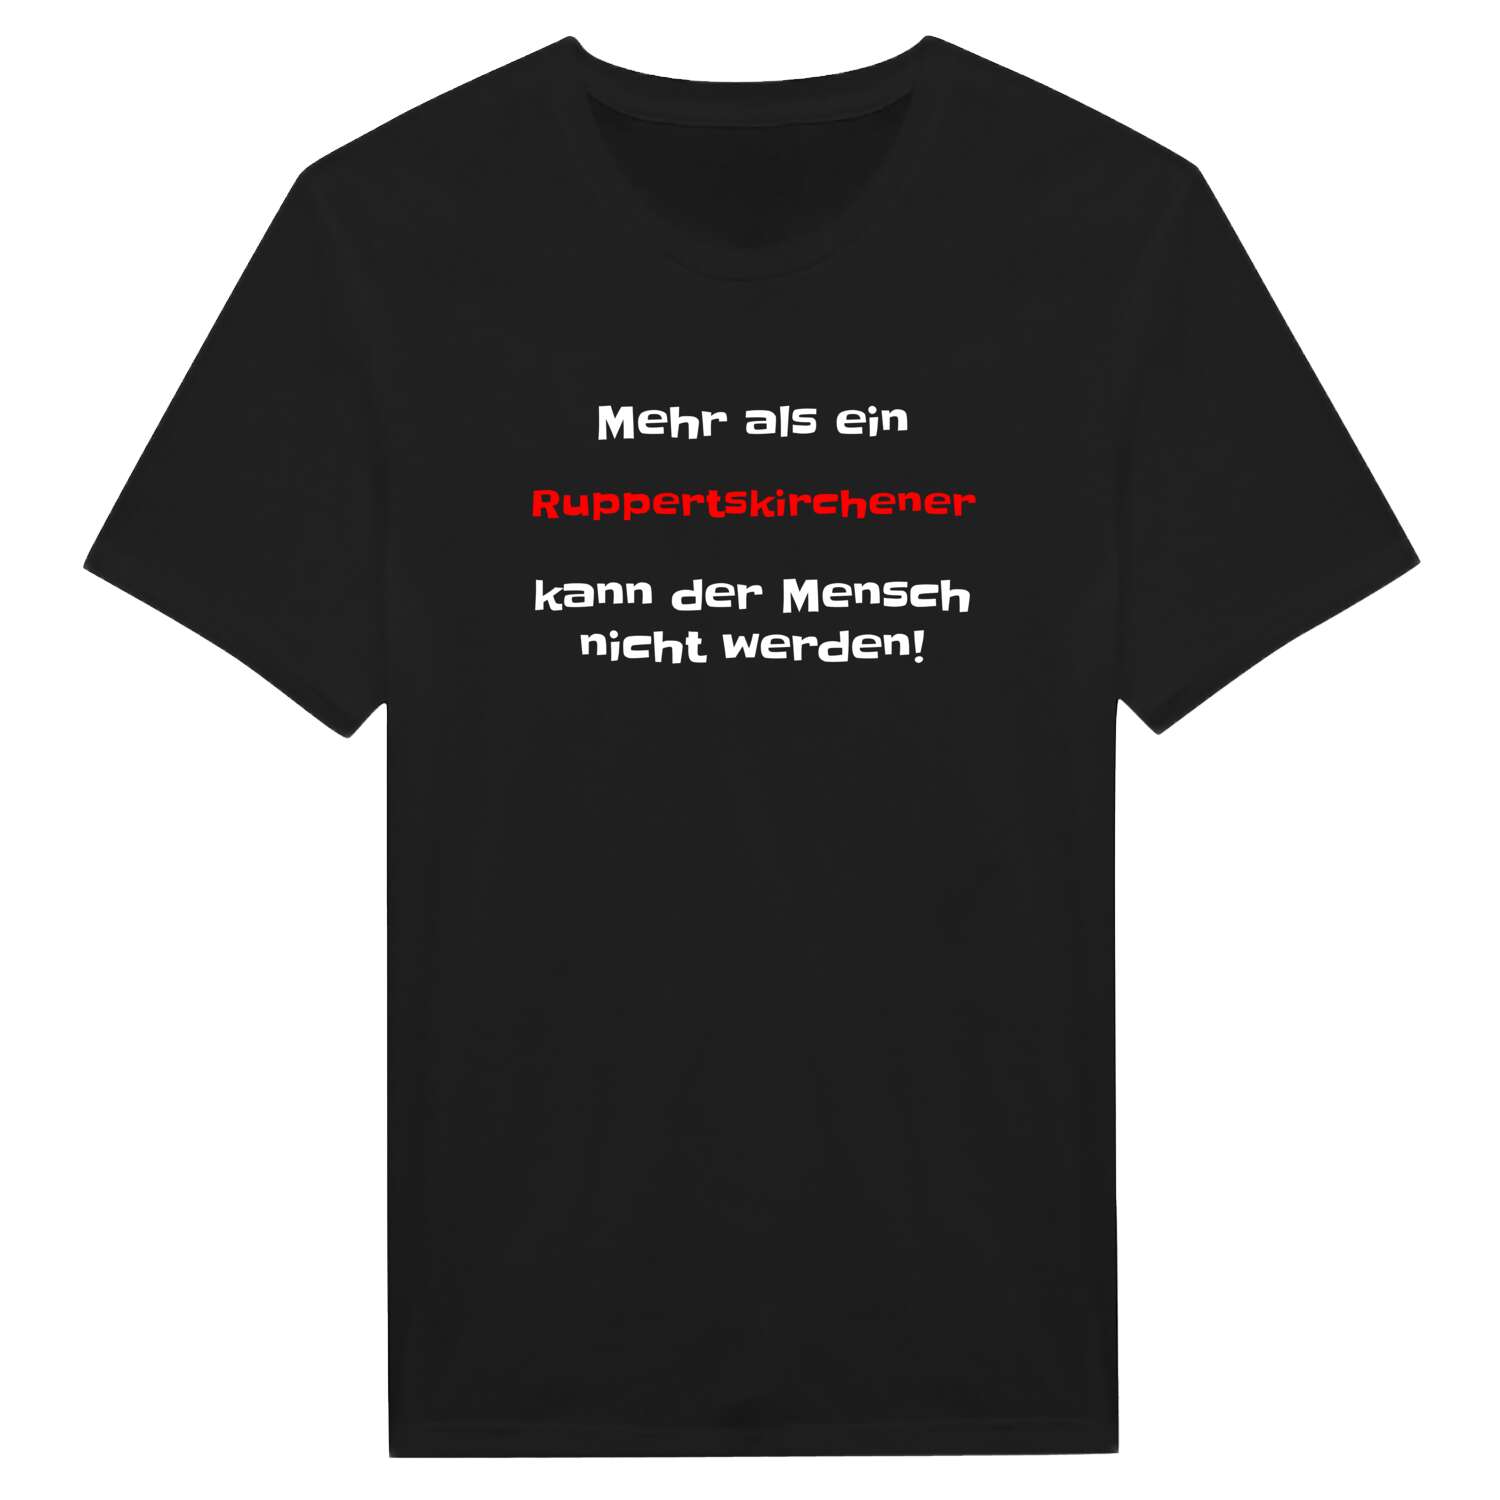 Ruppertskirchen T-Shirt »Mehr als ein«